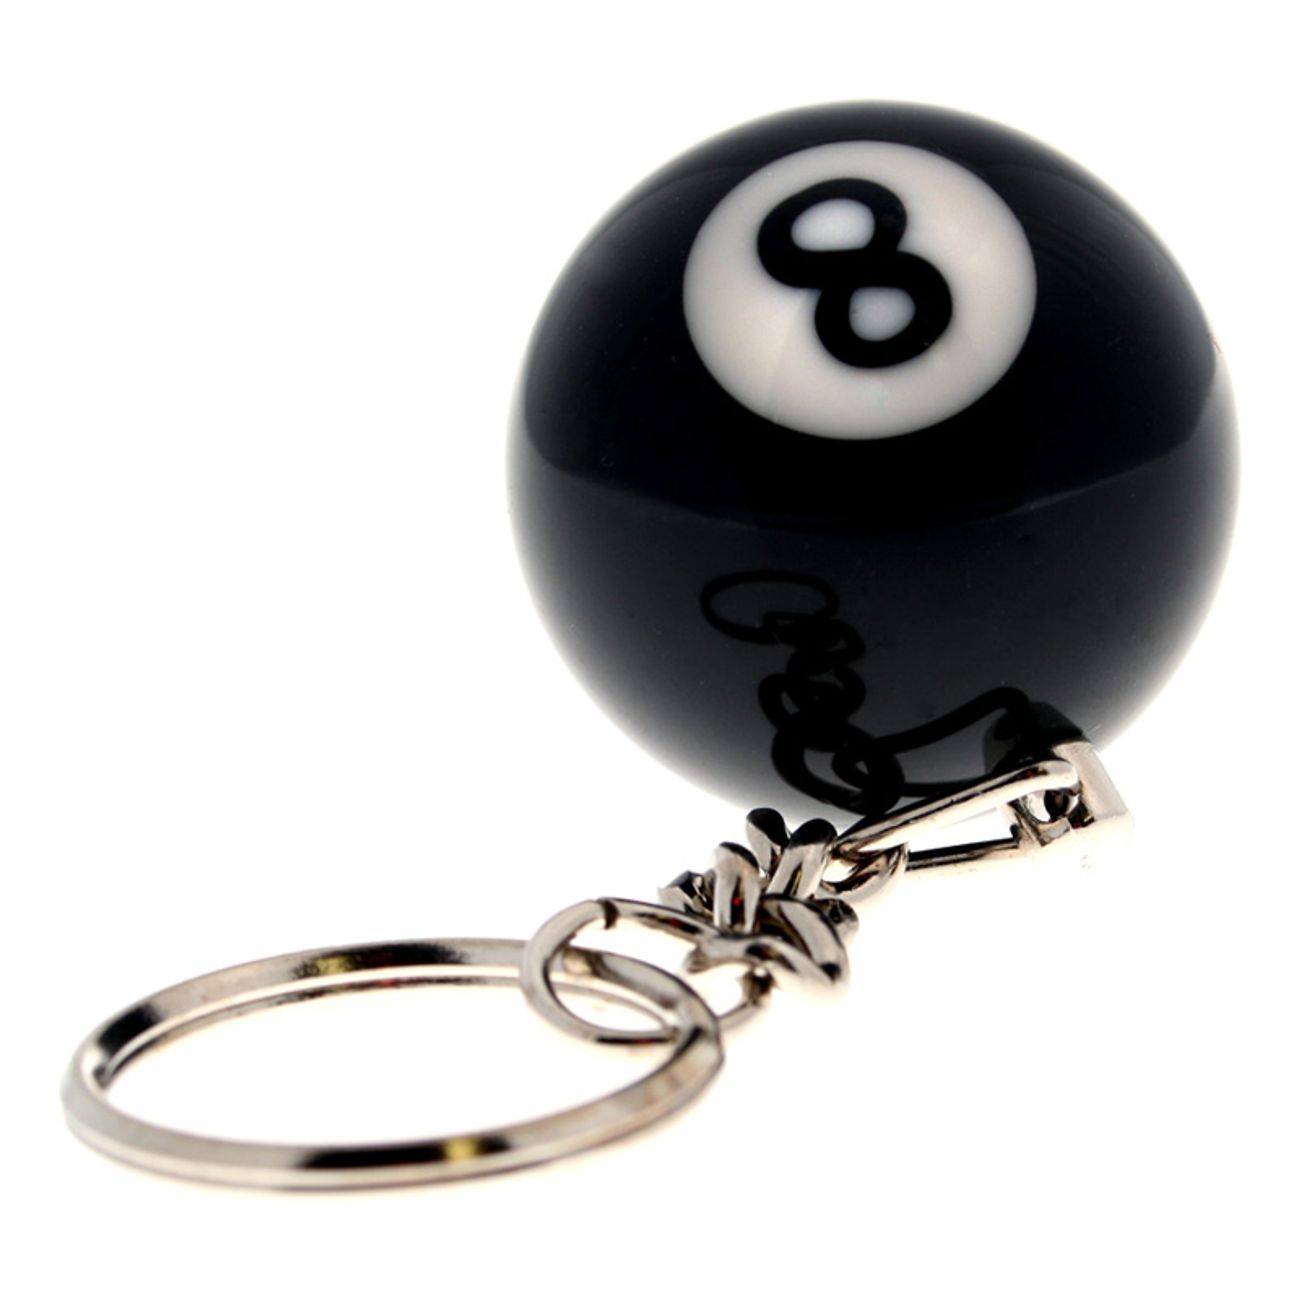 nyckelring-8-ball-1